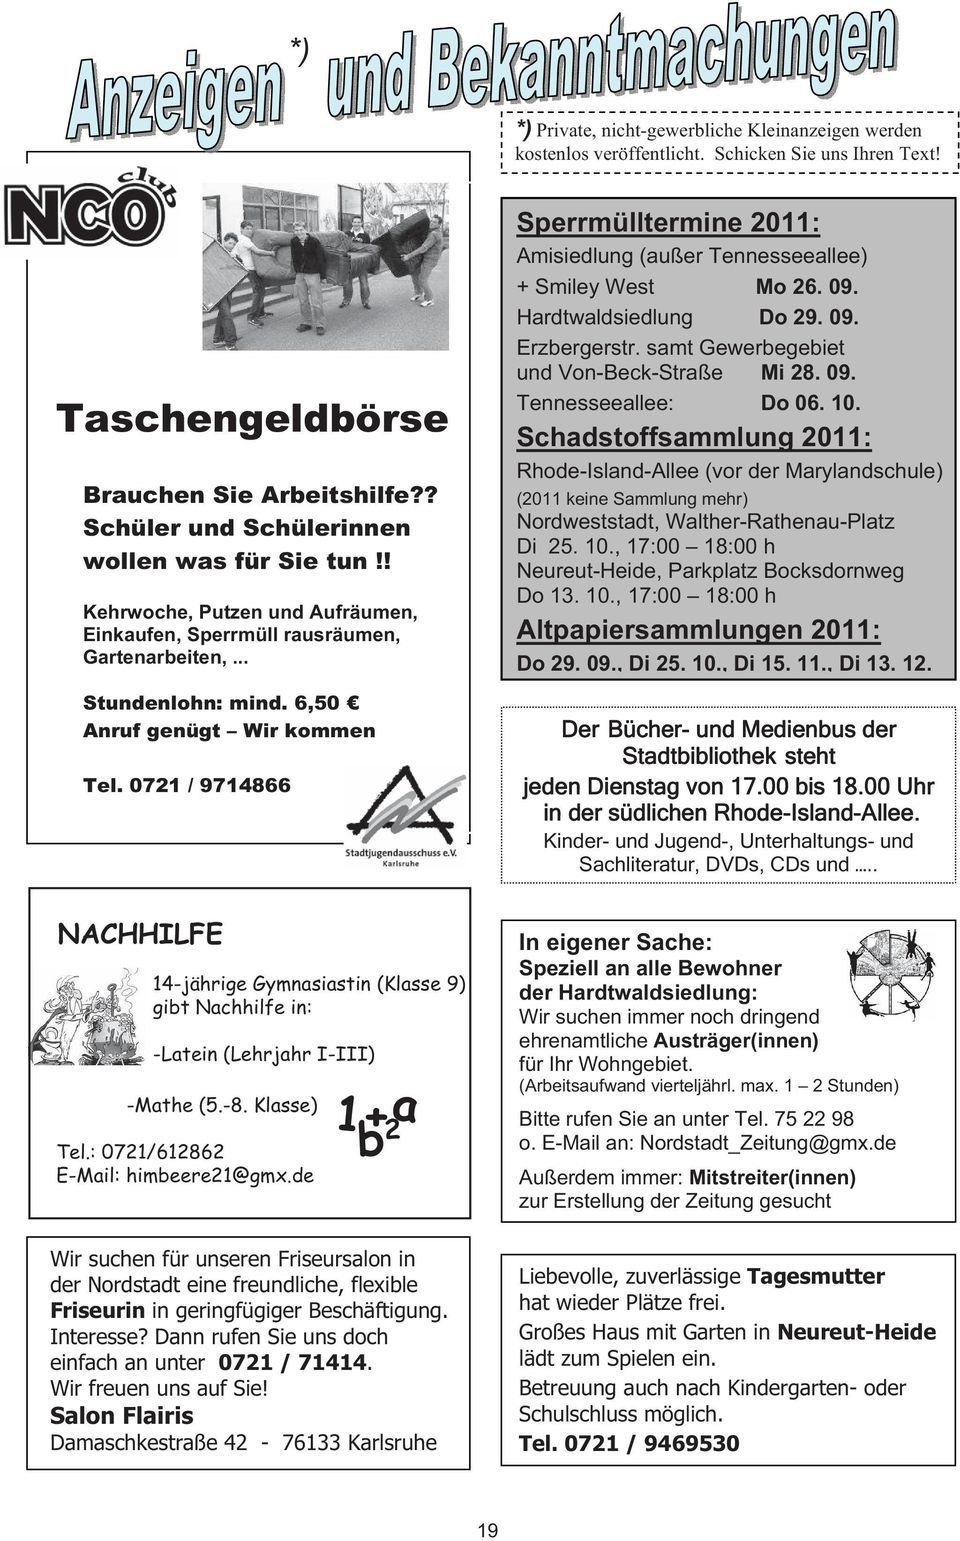 0721 / 9714866 Nachhilfe-Anzeige NACHHILFE Verkleinert auf ca. 80 x 53 mm 14-jährige Gymnasiastin (Klasse 9) gibt Nachhilfe in: -Latein (Lehrjahr I-III) -Mathe (5.-8. Klasse) Tel.